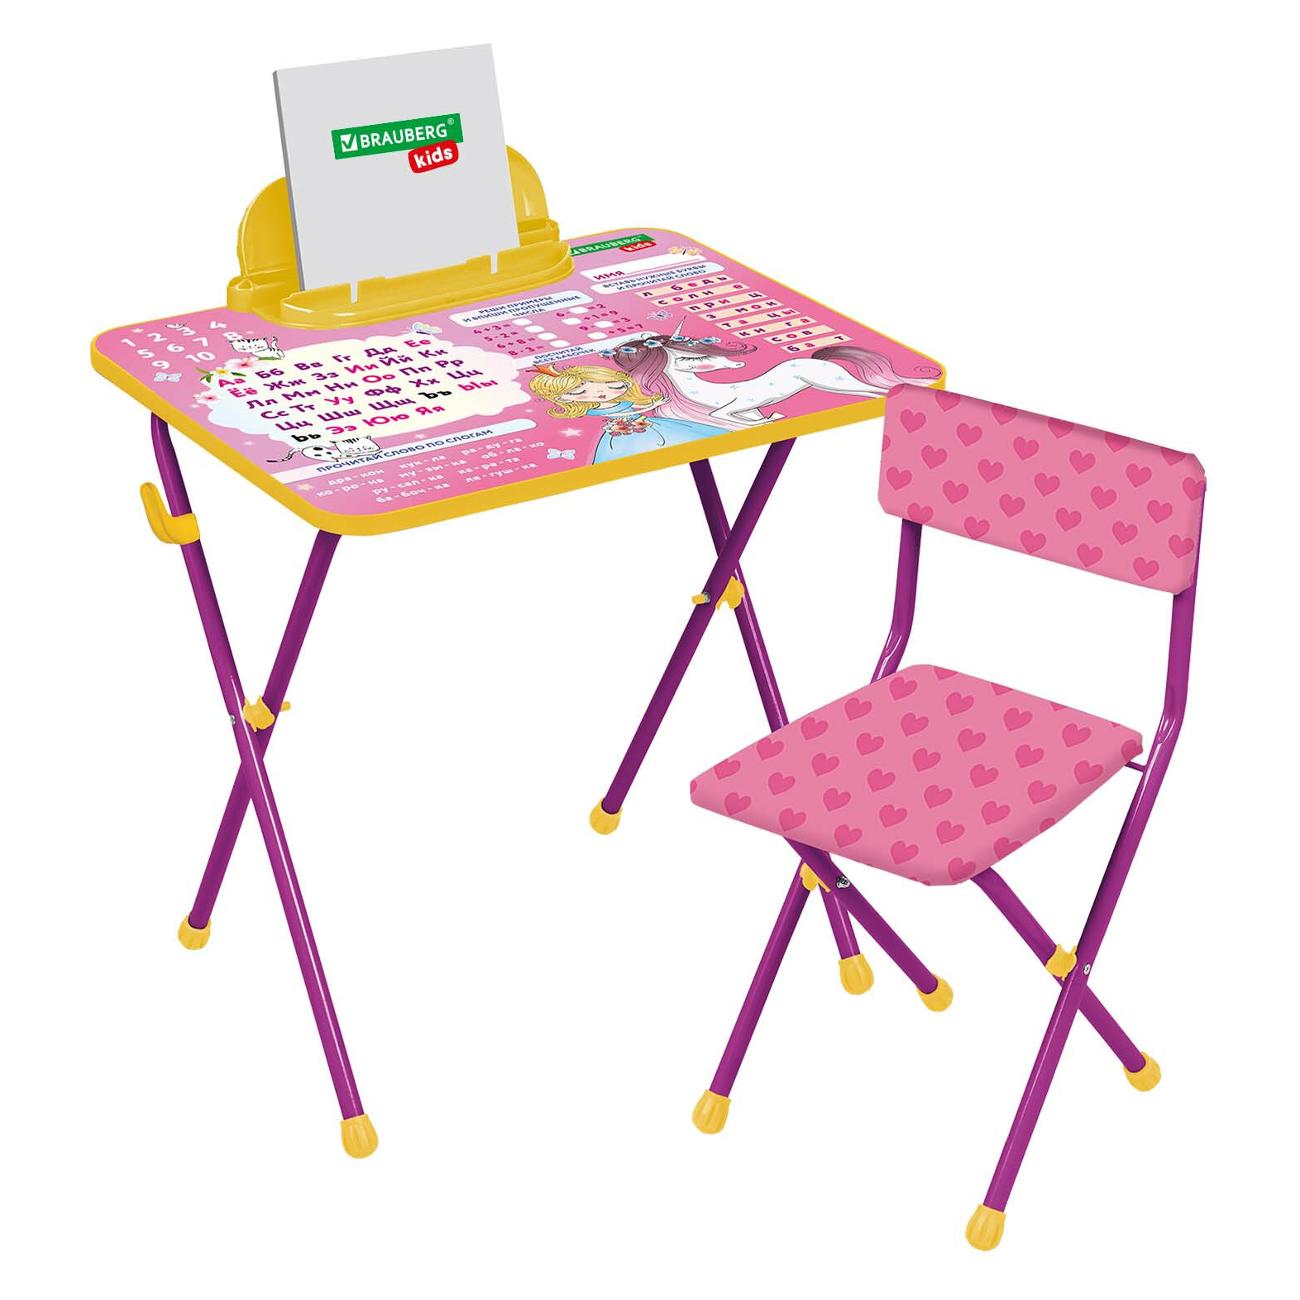 Crayola стол со стульчиком